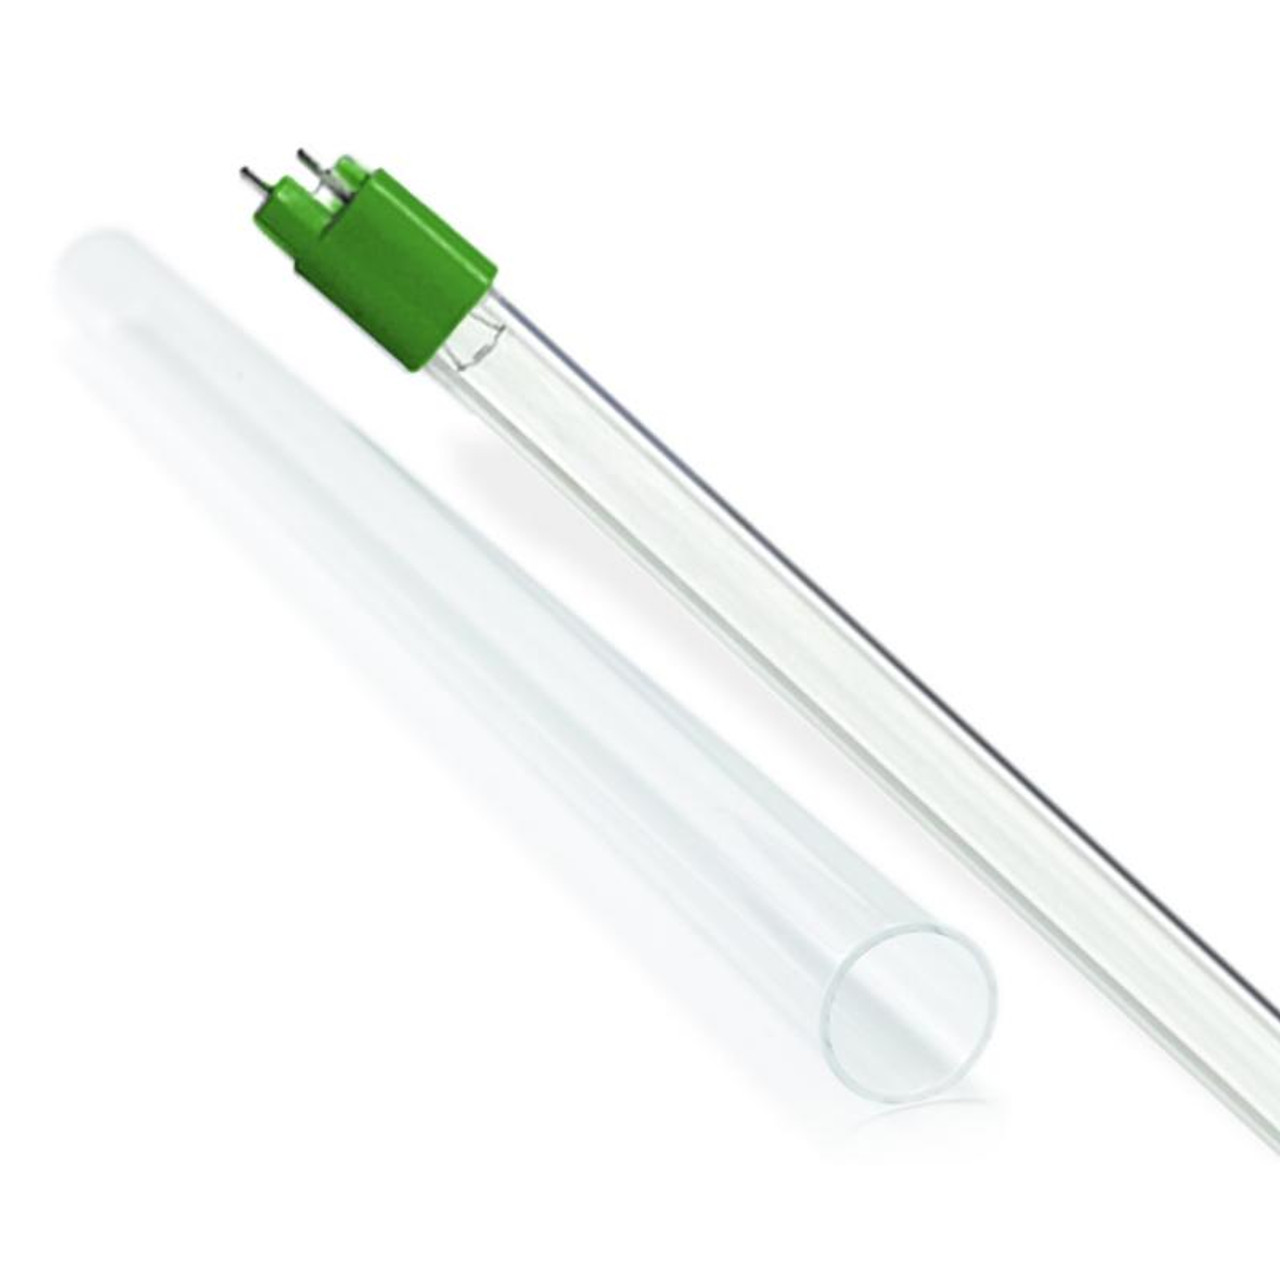 Sterilight S810-QL UV Lamp/Quartz Sleeve Combo Kit